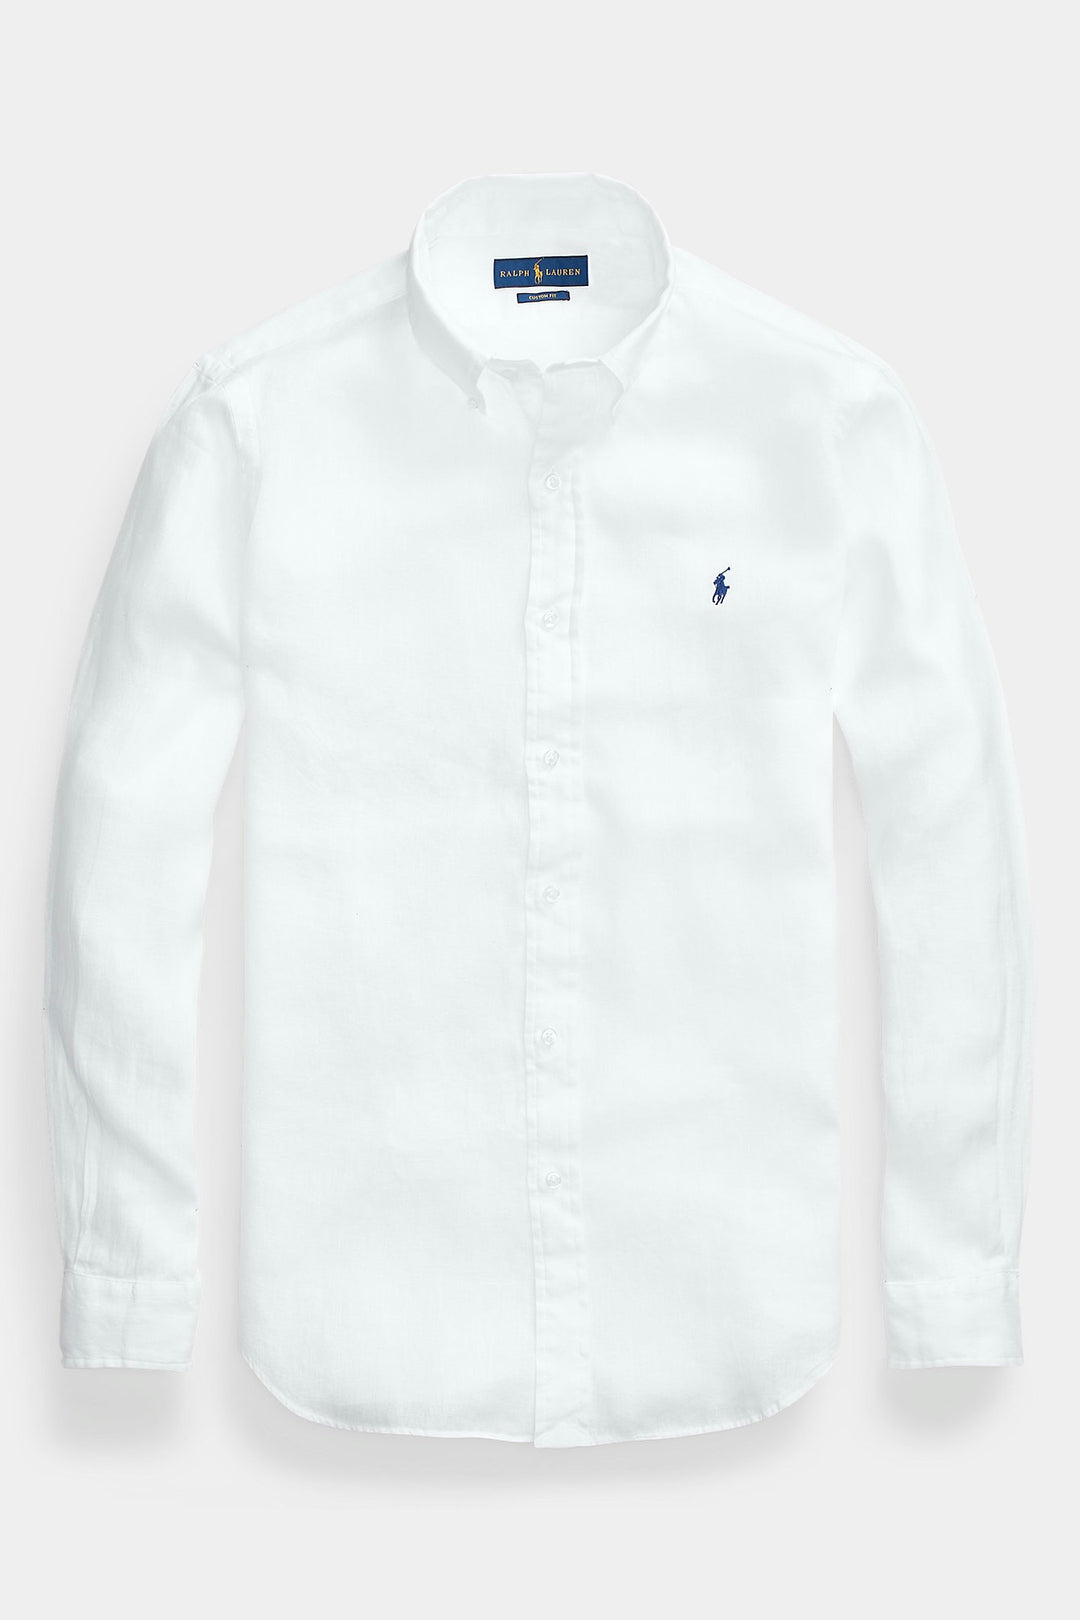 POLO RALPH LAUREN - Custom Fit Linen Shirt White - Dale